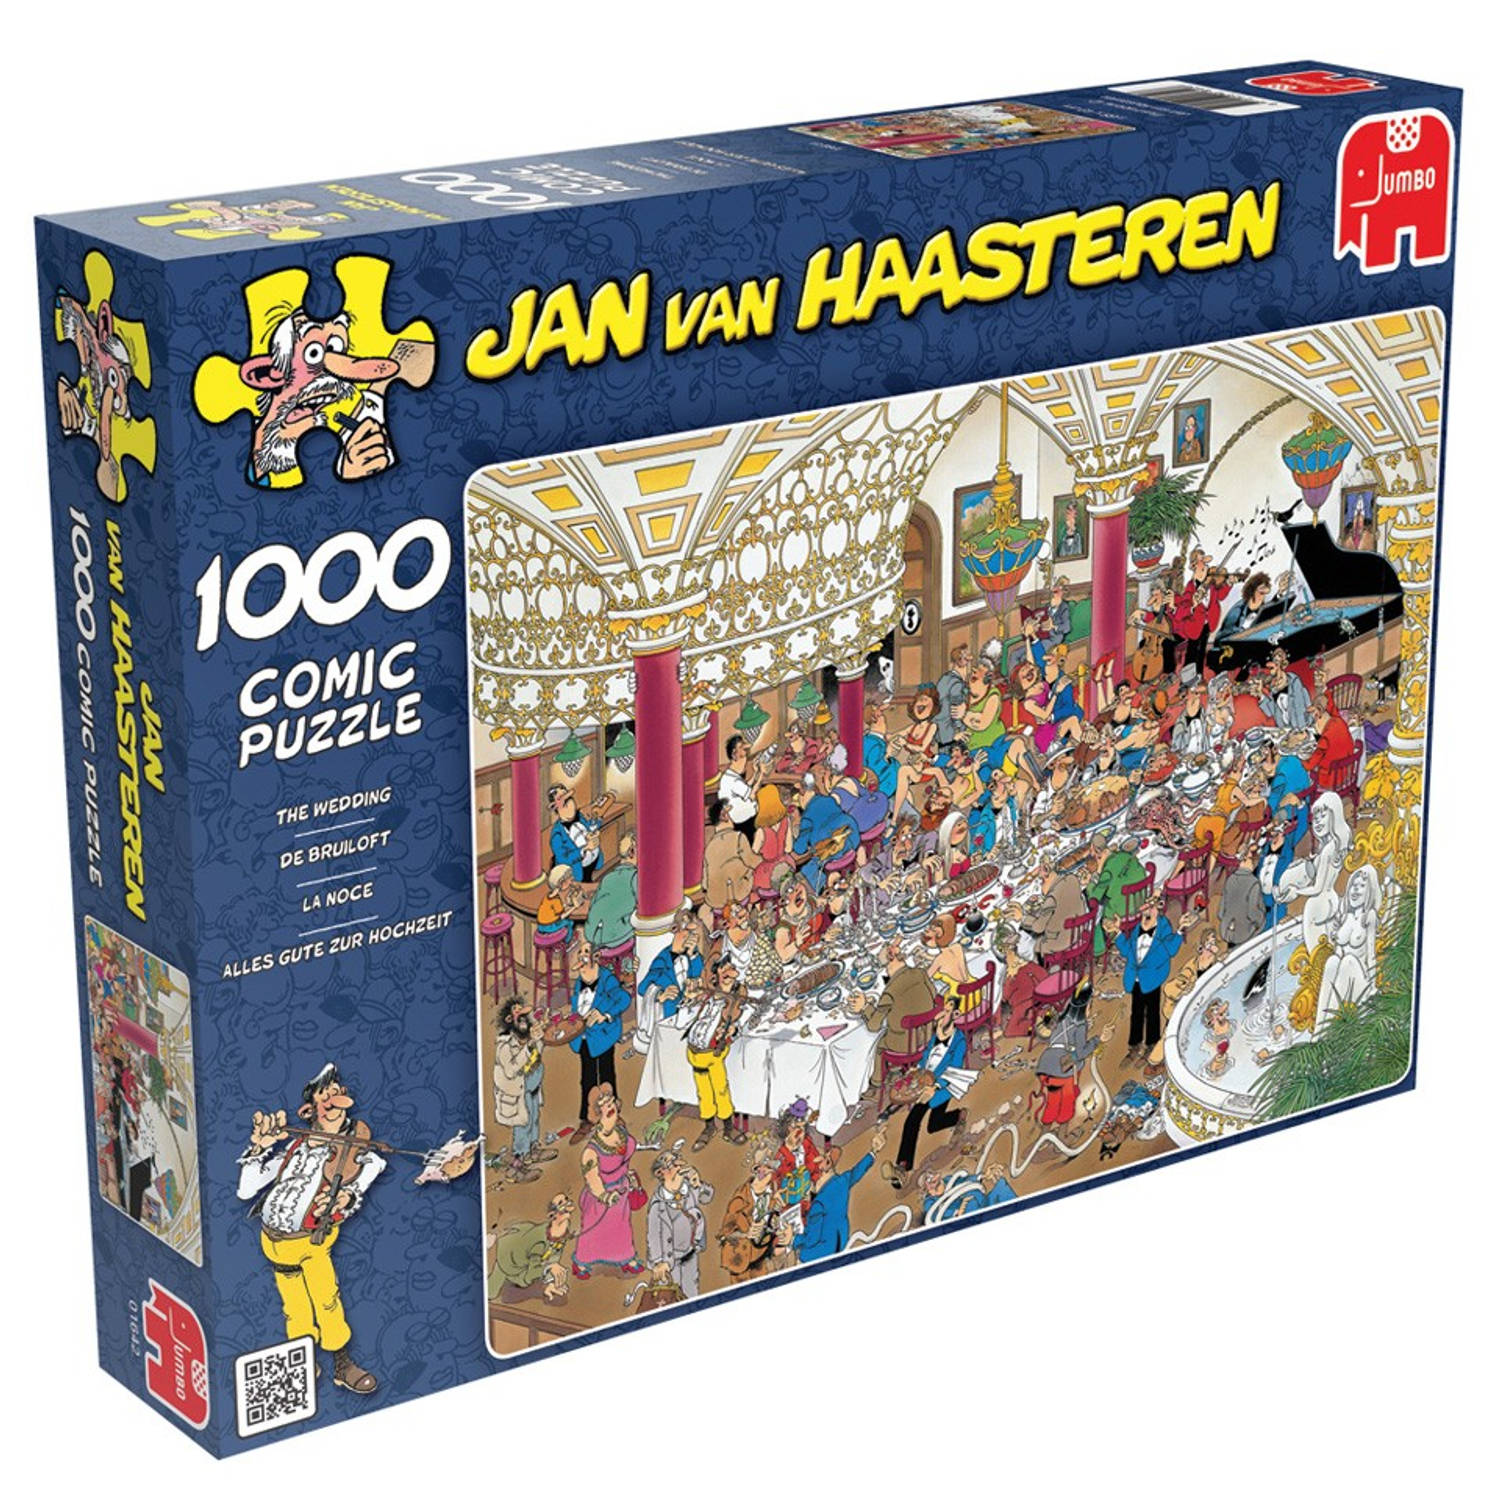 Voorwaardelijk Reorganiseren Confronteren Jan van Haasteren puzzel de bruiloft - 1000 stukjes | Blokker